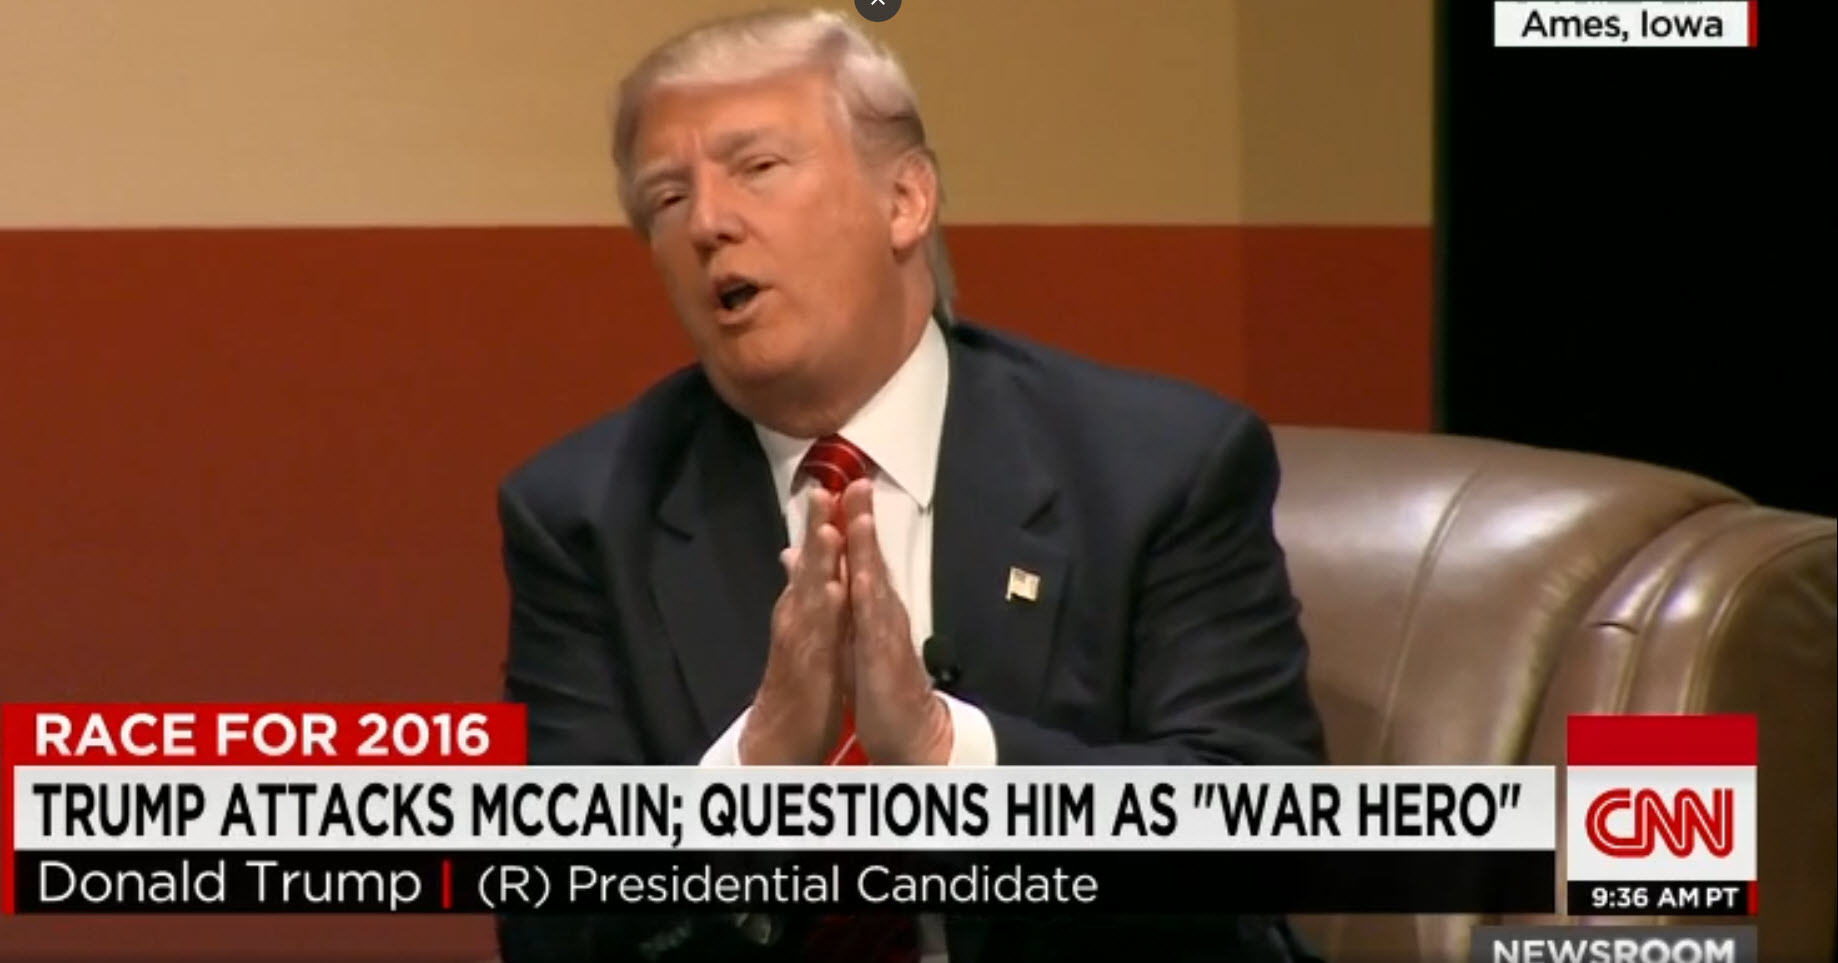 Trump javno dvomi o herojstvu McCaina